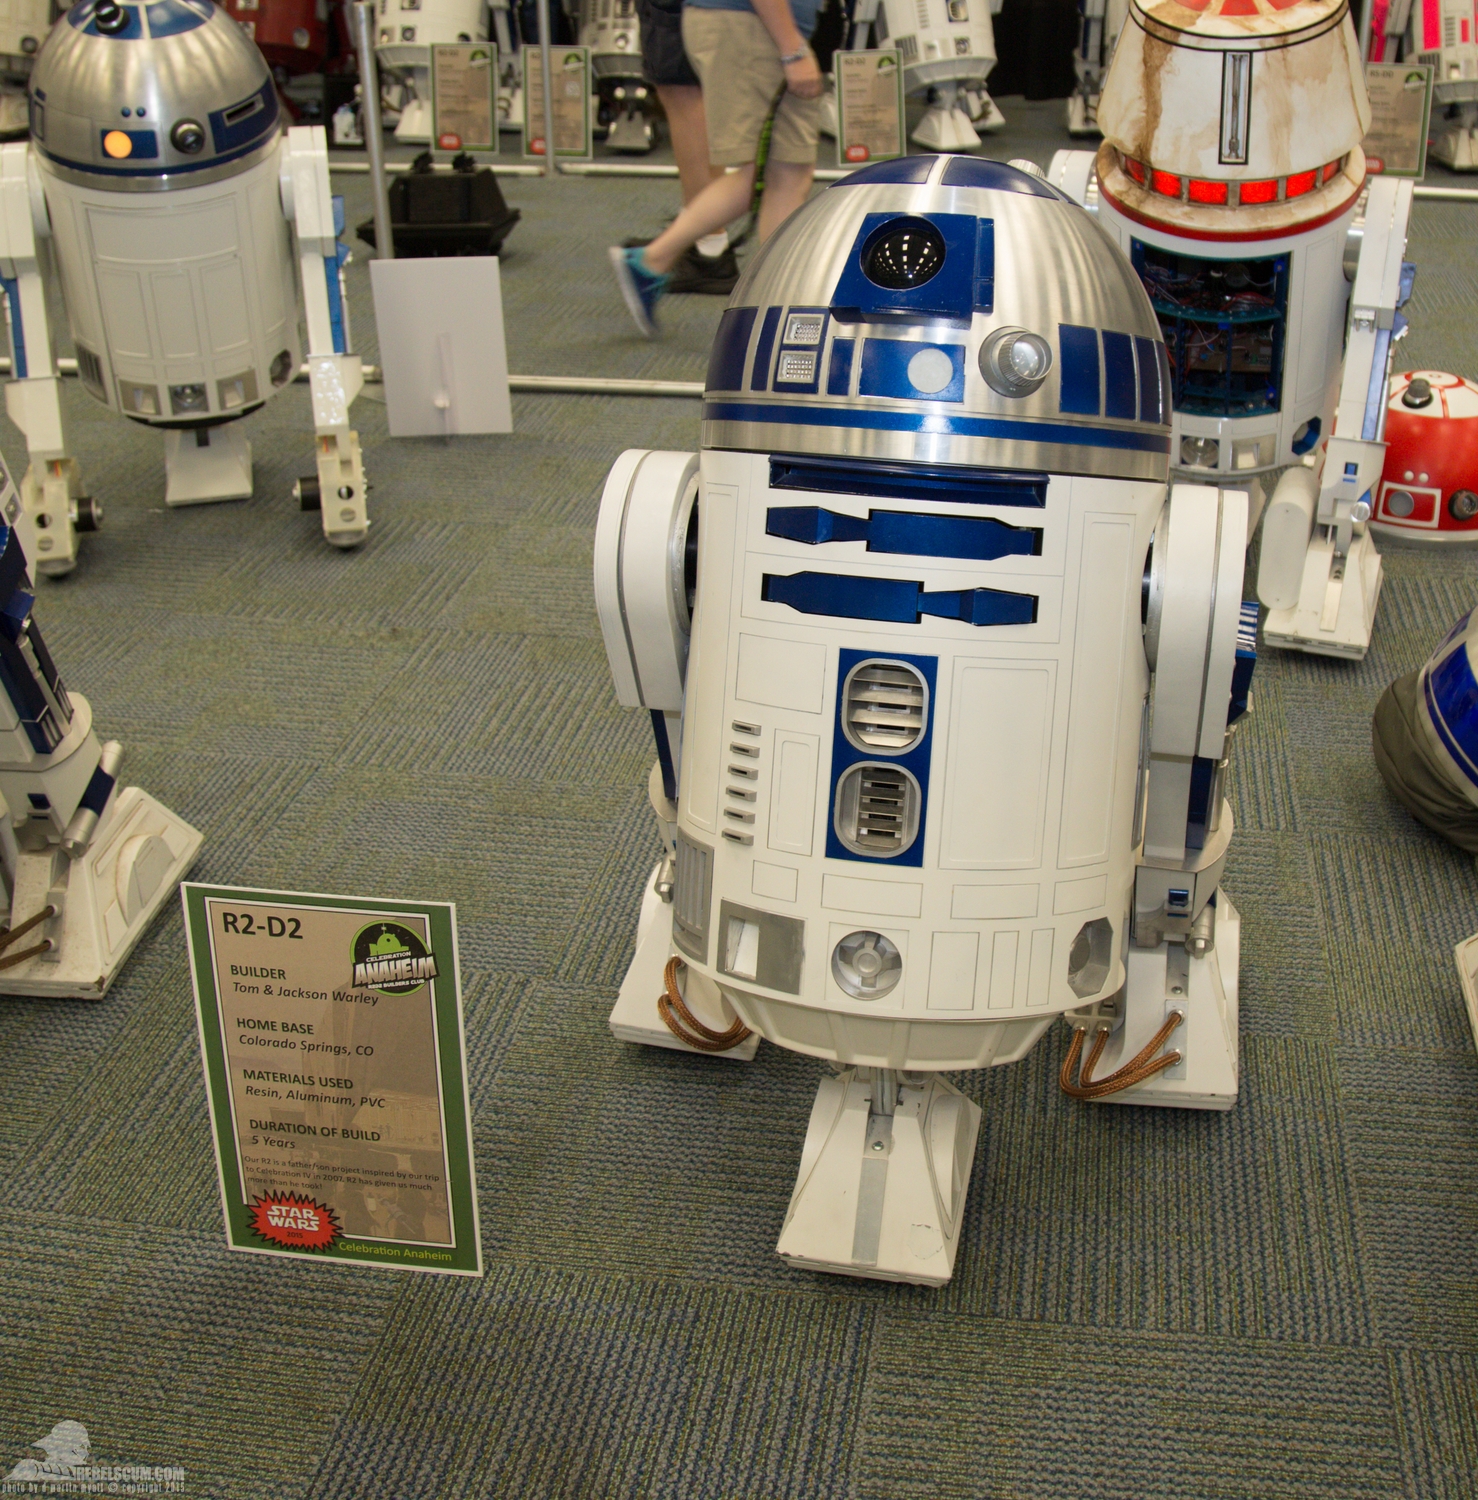 Star-Wars-Celebration-Anaheim-2015-R2-Builders-094.jpg